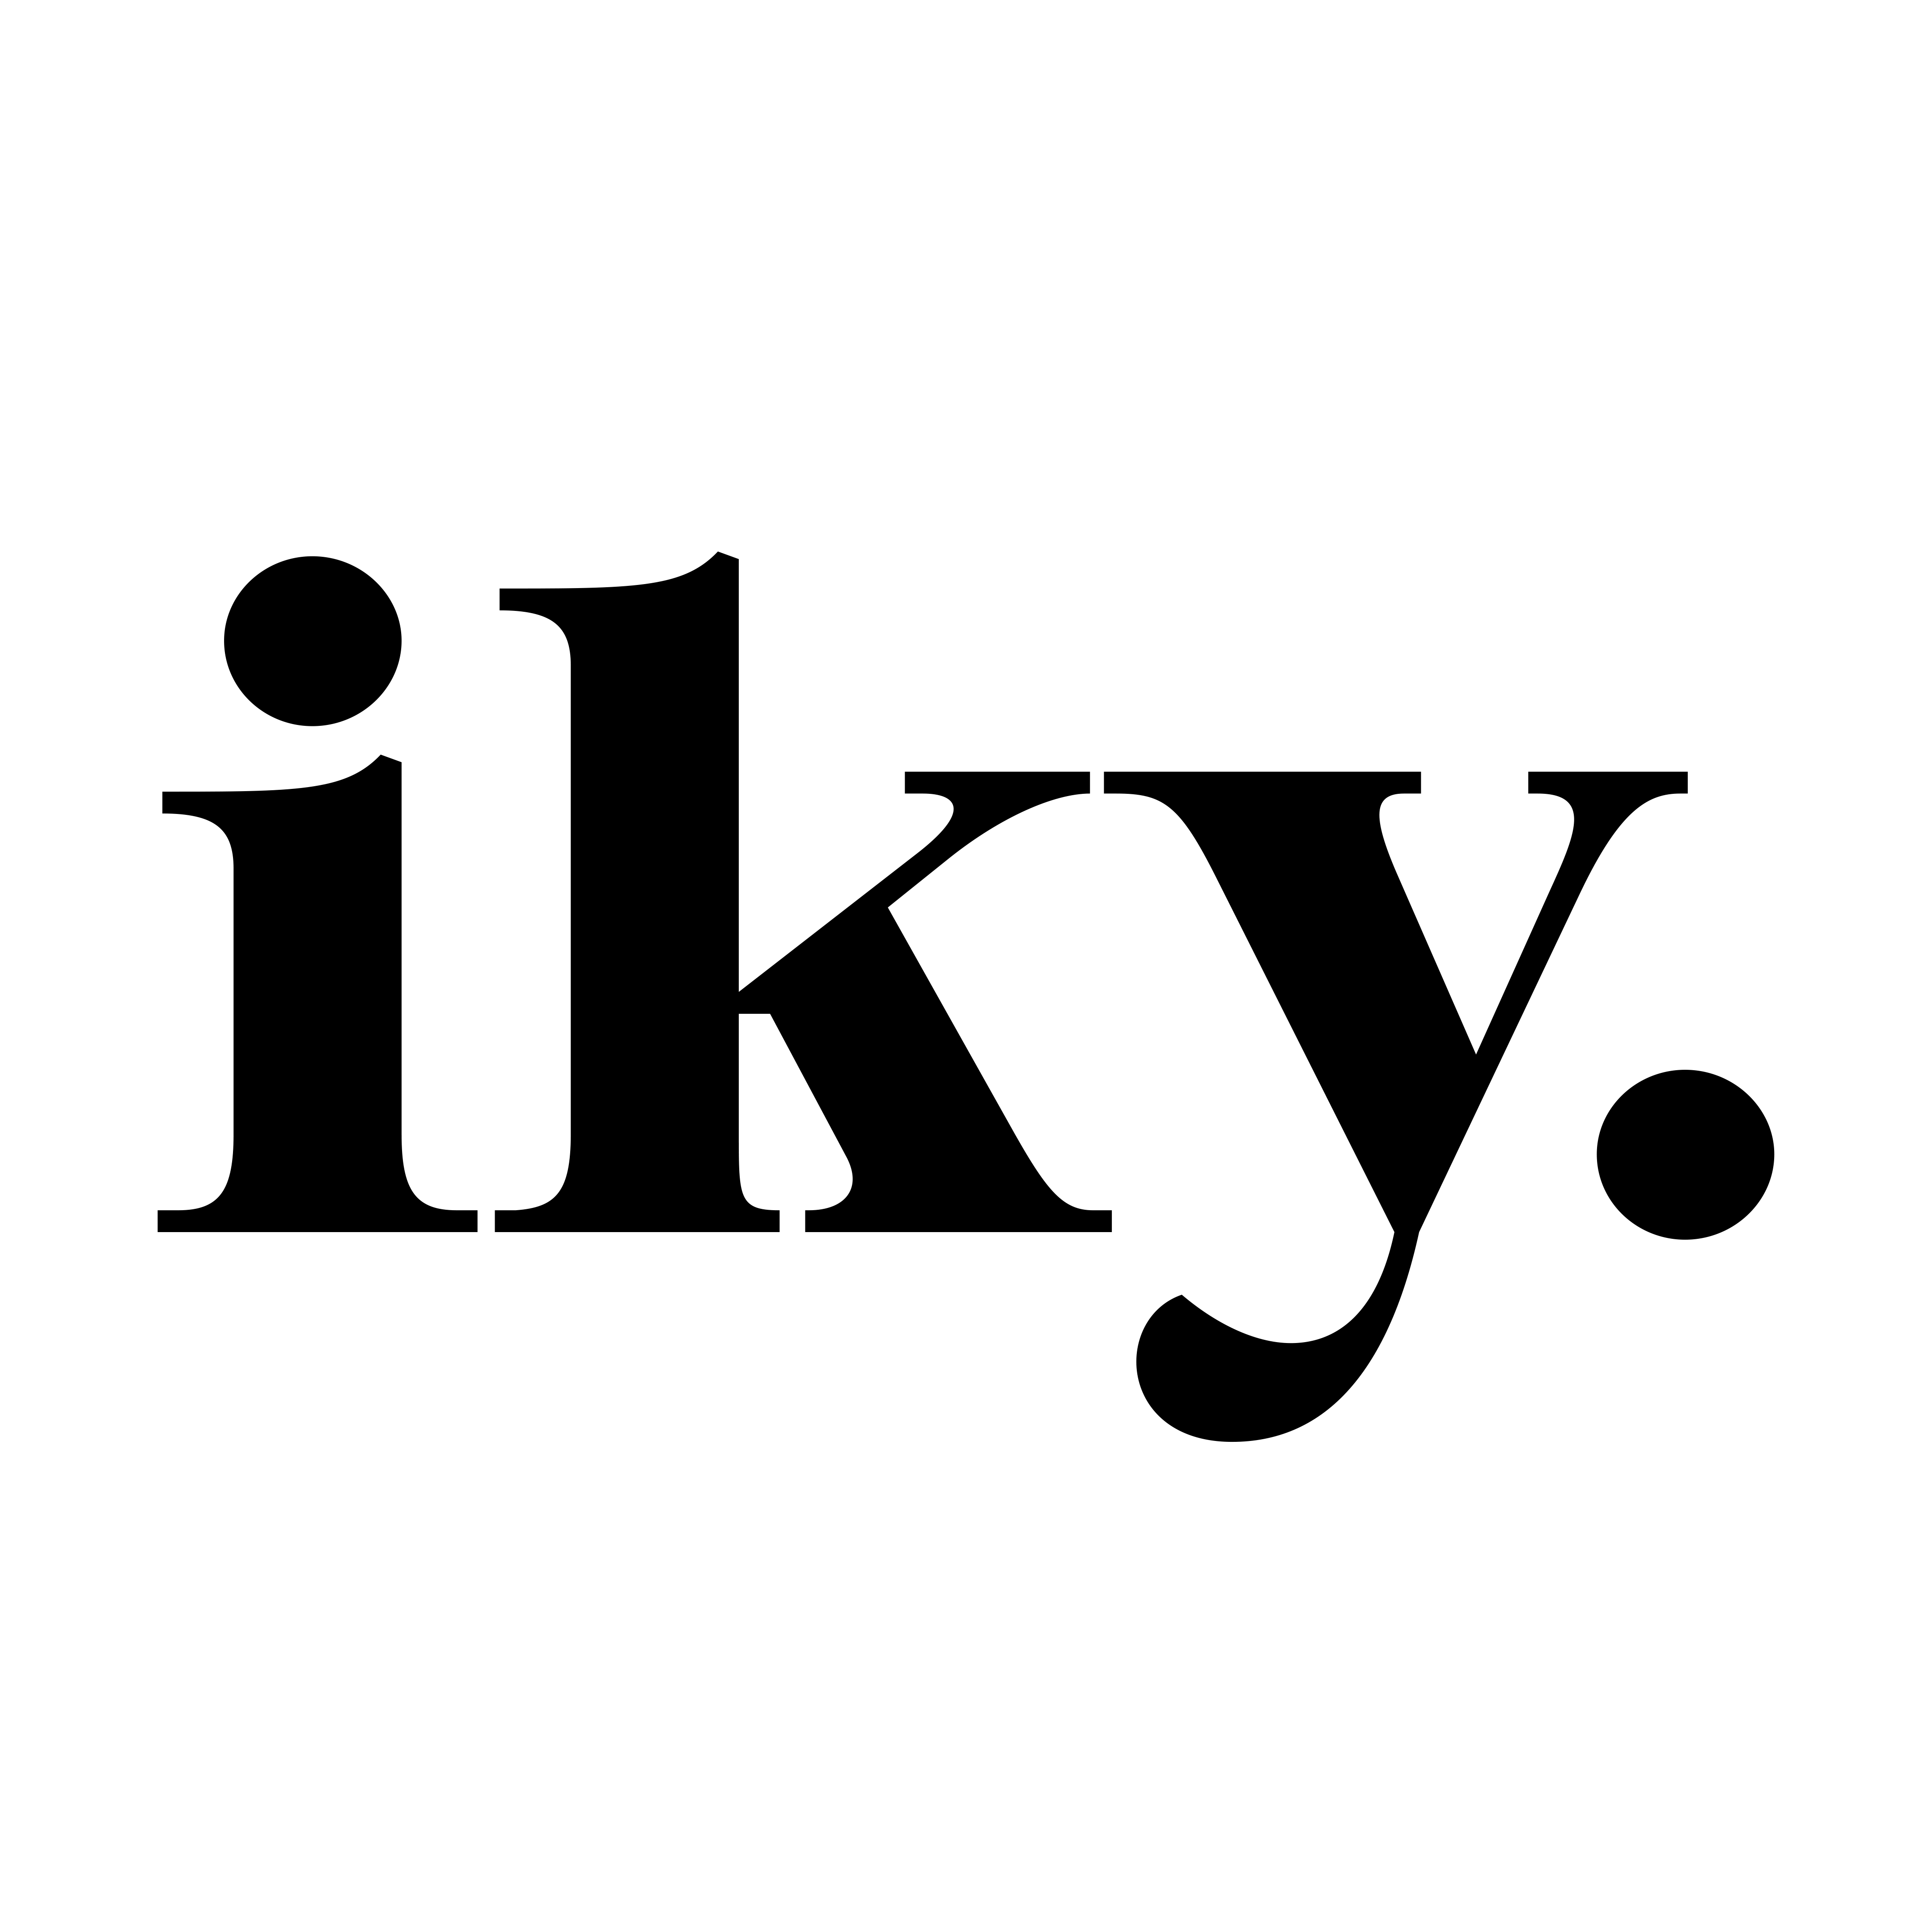 iky-logo